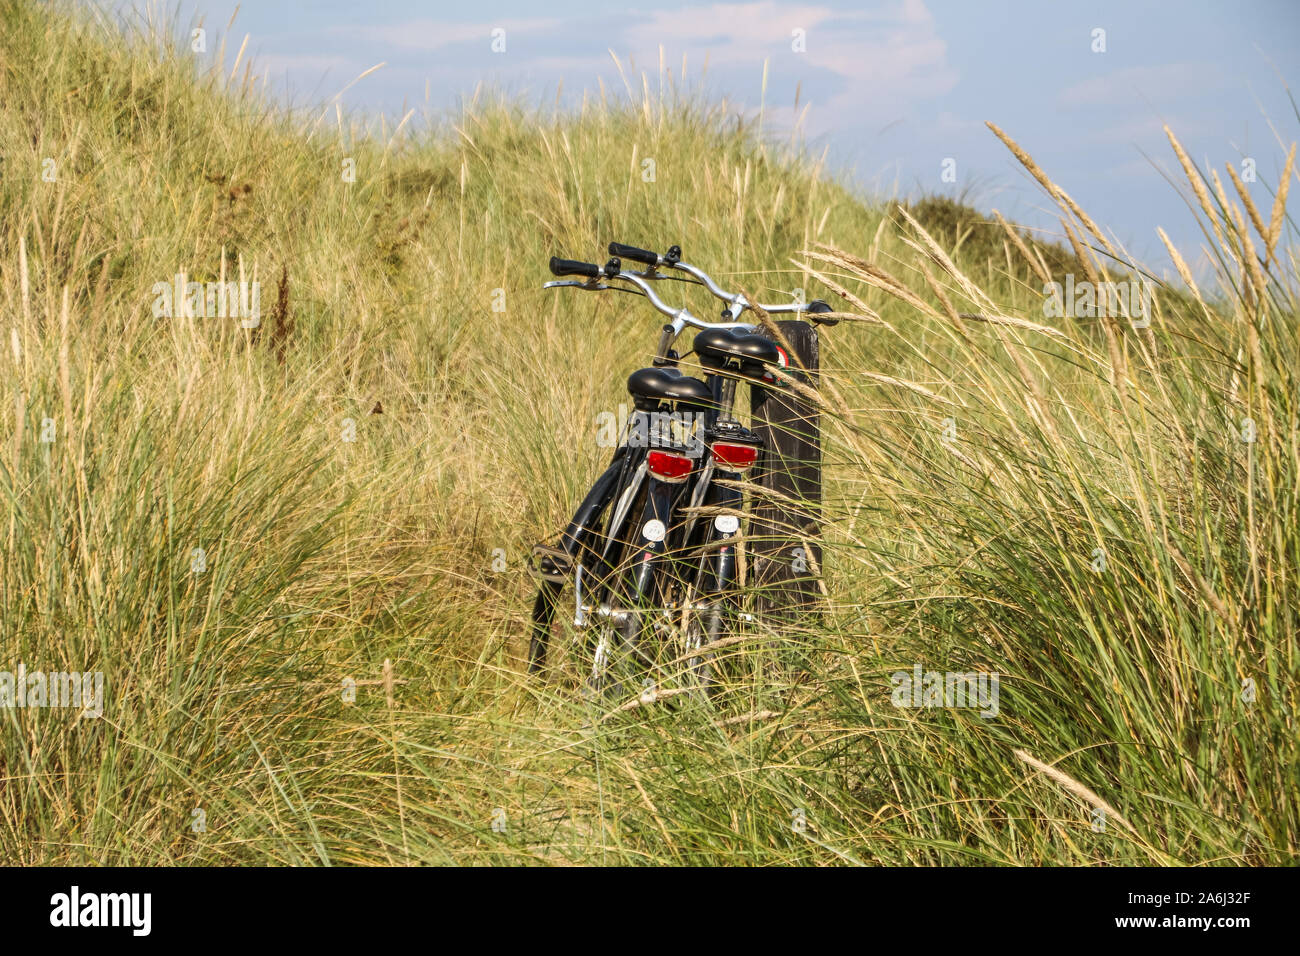 Fahrräder im Gras auf einer Düne geparkt werden in Skagen, Dänemark am 28. Juli 2019 Skagen ist die nördlichste Stadt Dänemarks, an der Ostküste der Halbinsel Skagen Odde ganz im Norden von Jütland. © Michal Fludra/Alamy leben Nachrichten Stockfoto